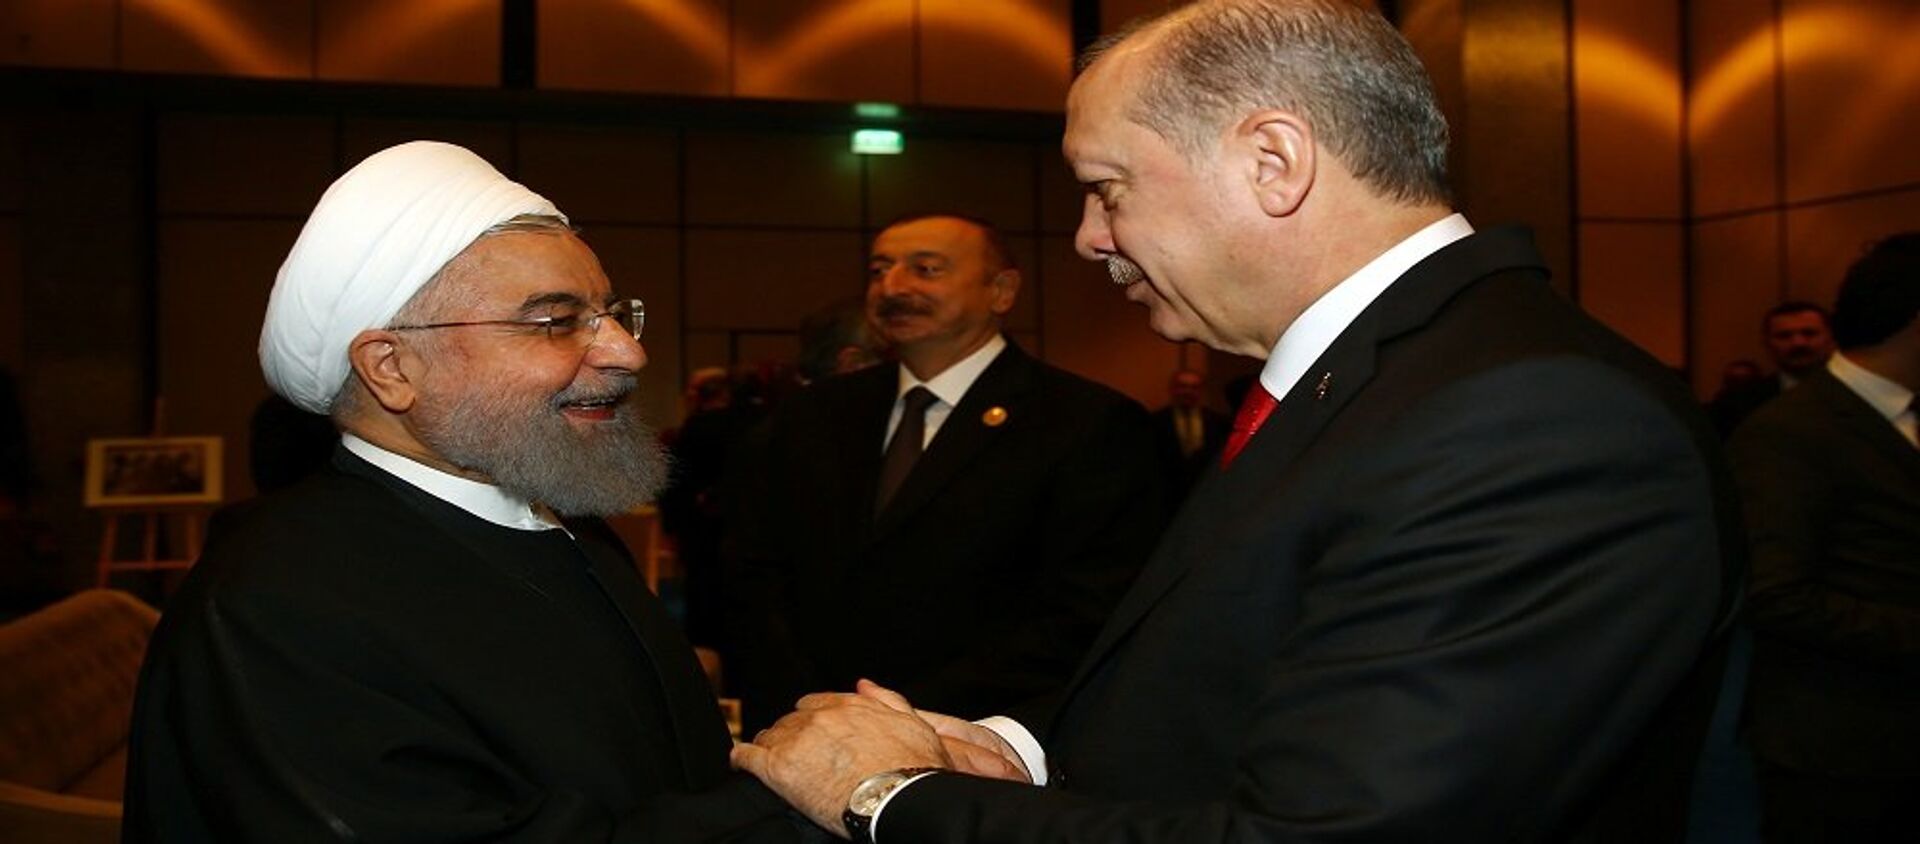  الرئيس التركي رجب طيب أردوغان والرئيس الإيراني حسن روحاني في اسطنبول، تركيا 13 ديسمبر/ كانون الأول 2017 - سبوتنيك عربي, 1920, 30.03.2021